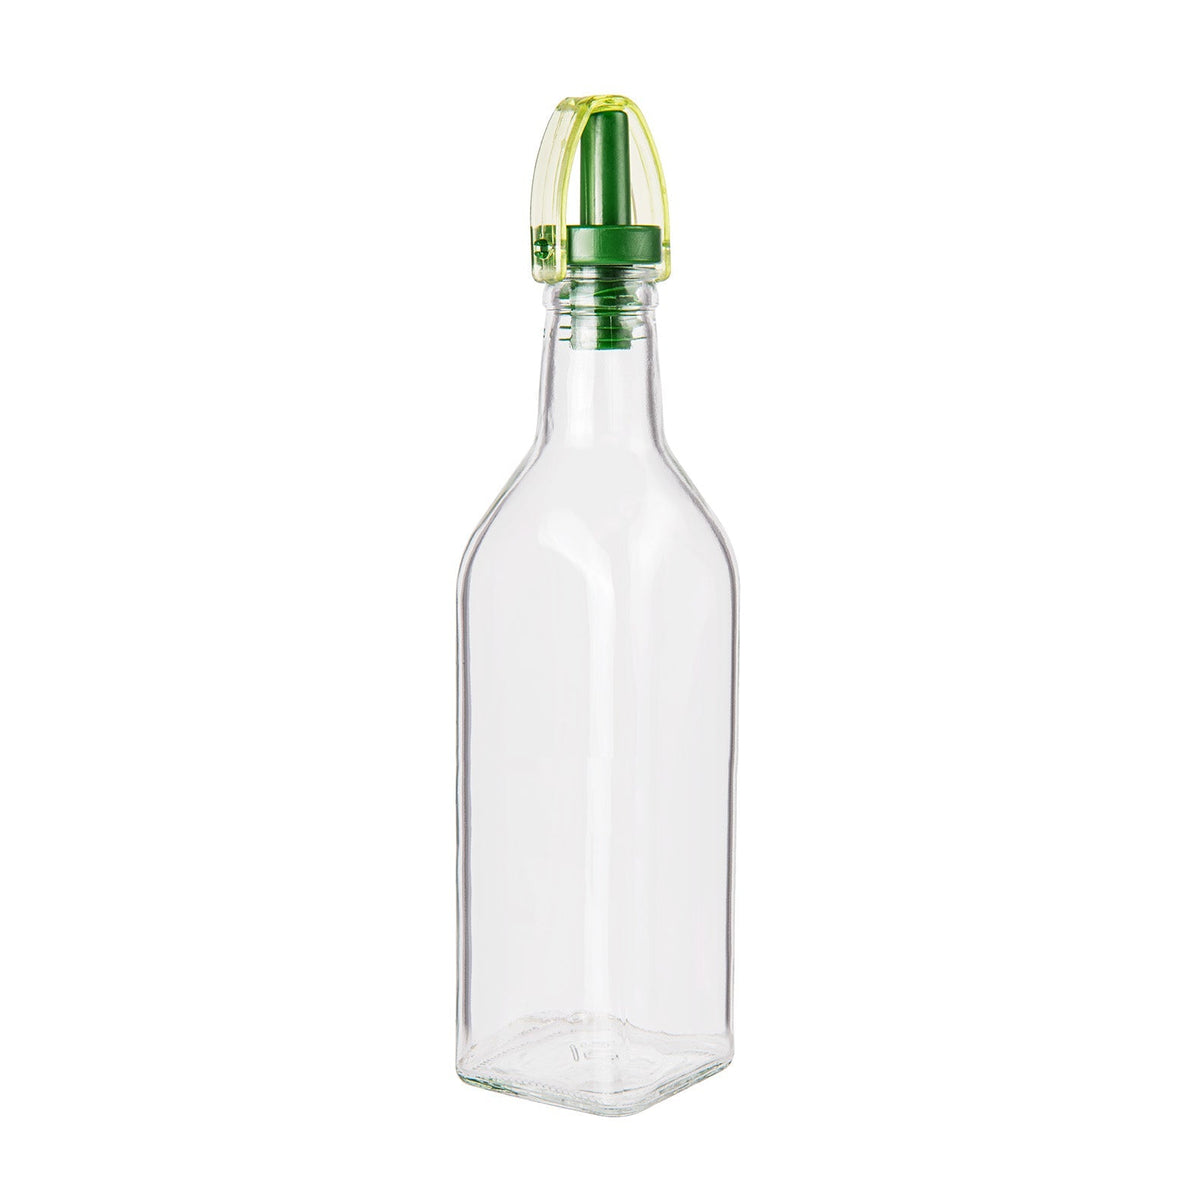 Garrafa de vidro com dispensador de óleo ou vinagre - 250ml